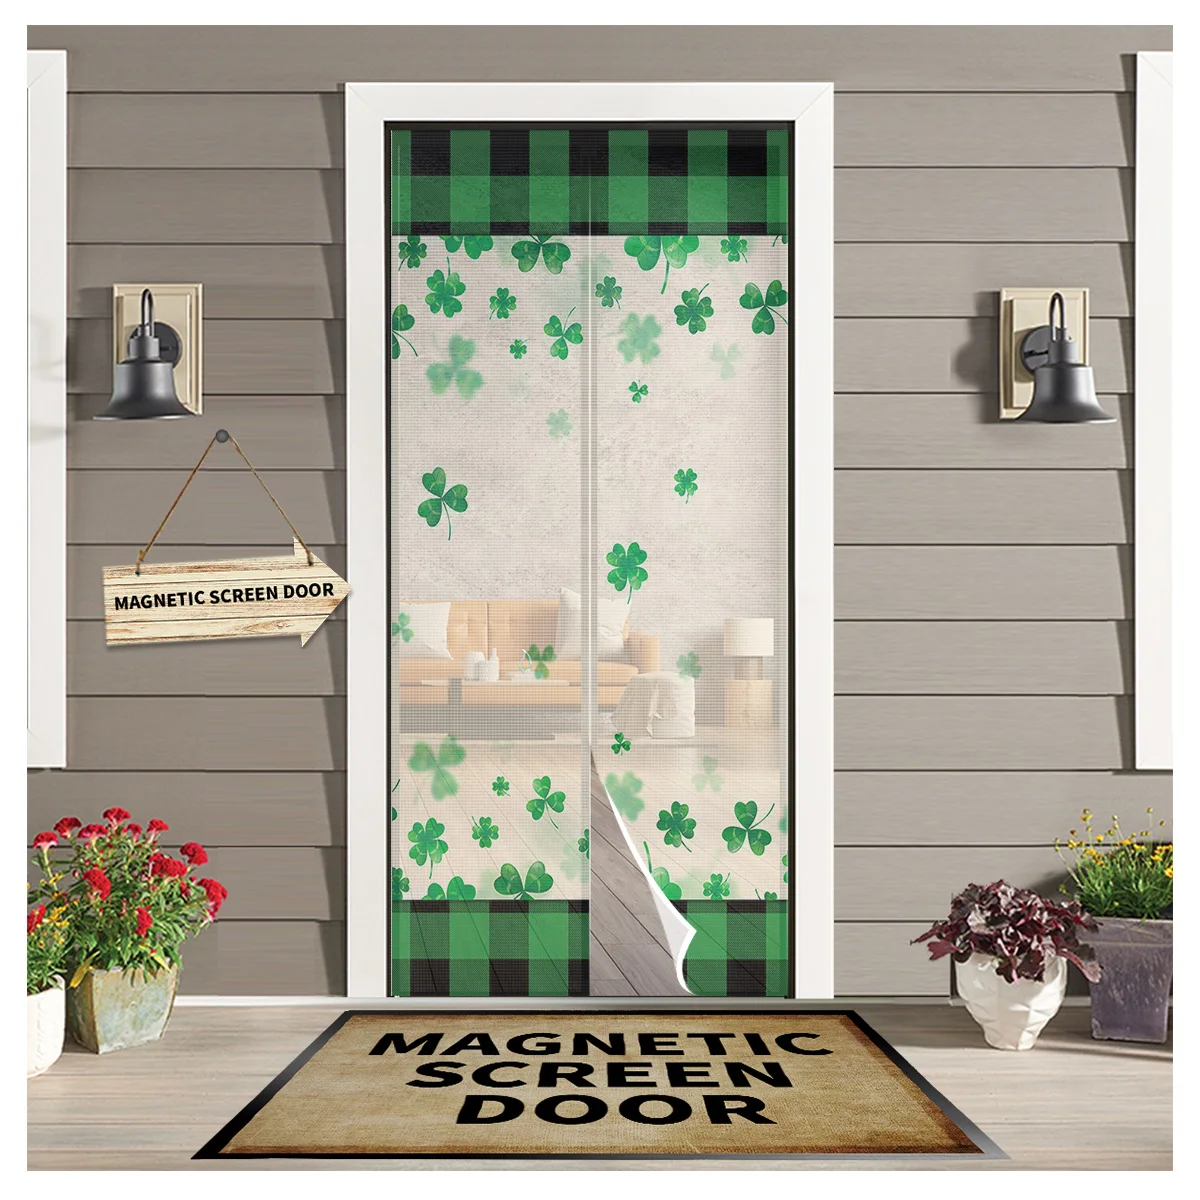 

Магнитные подвесные Шторы для кухни St. Patrick'S Day Shamrock прозрачная дверная занавеска, защита от комаров, оконный экран, марлевая дверная занавес...